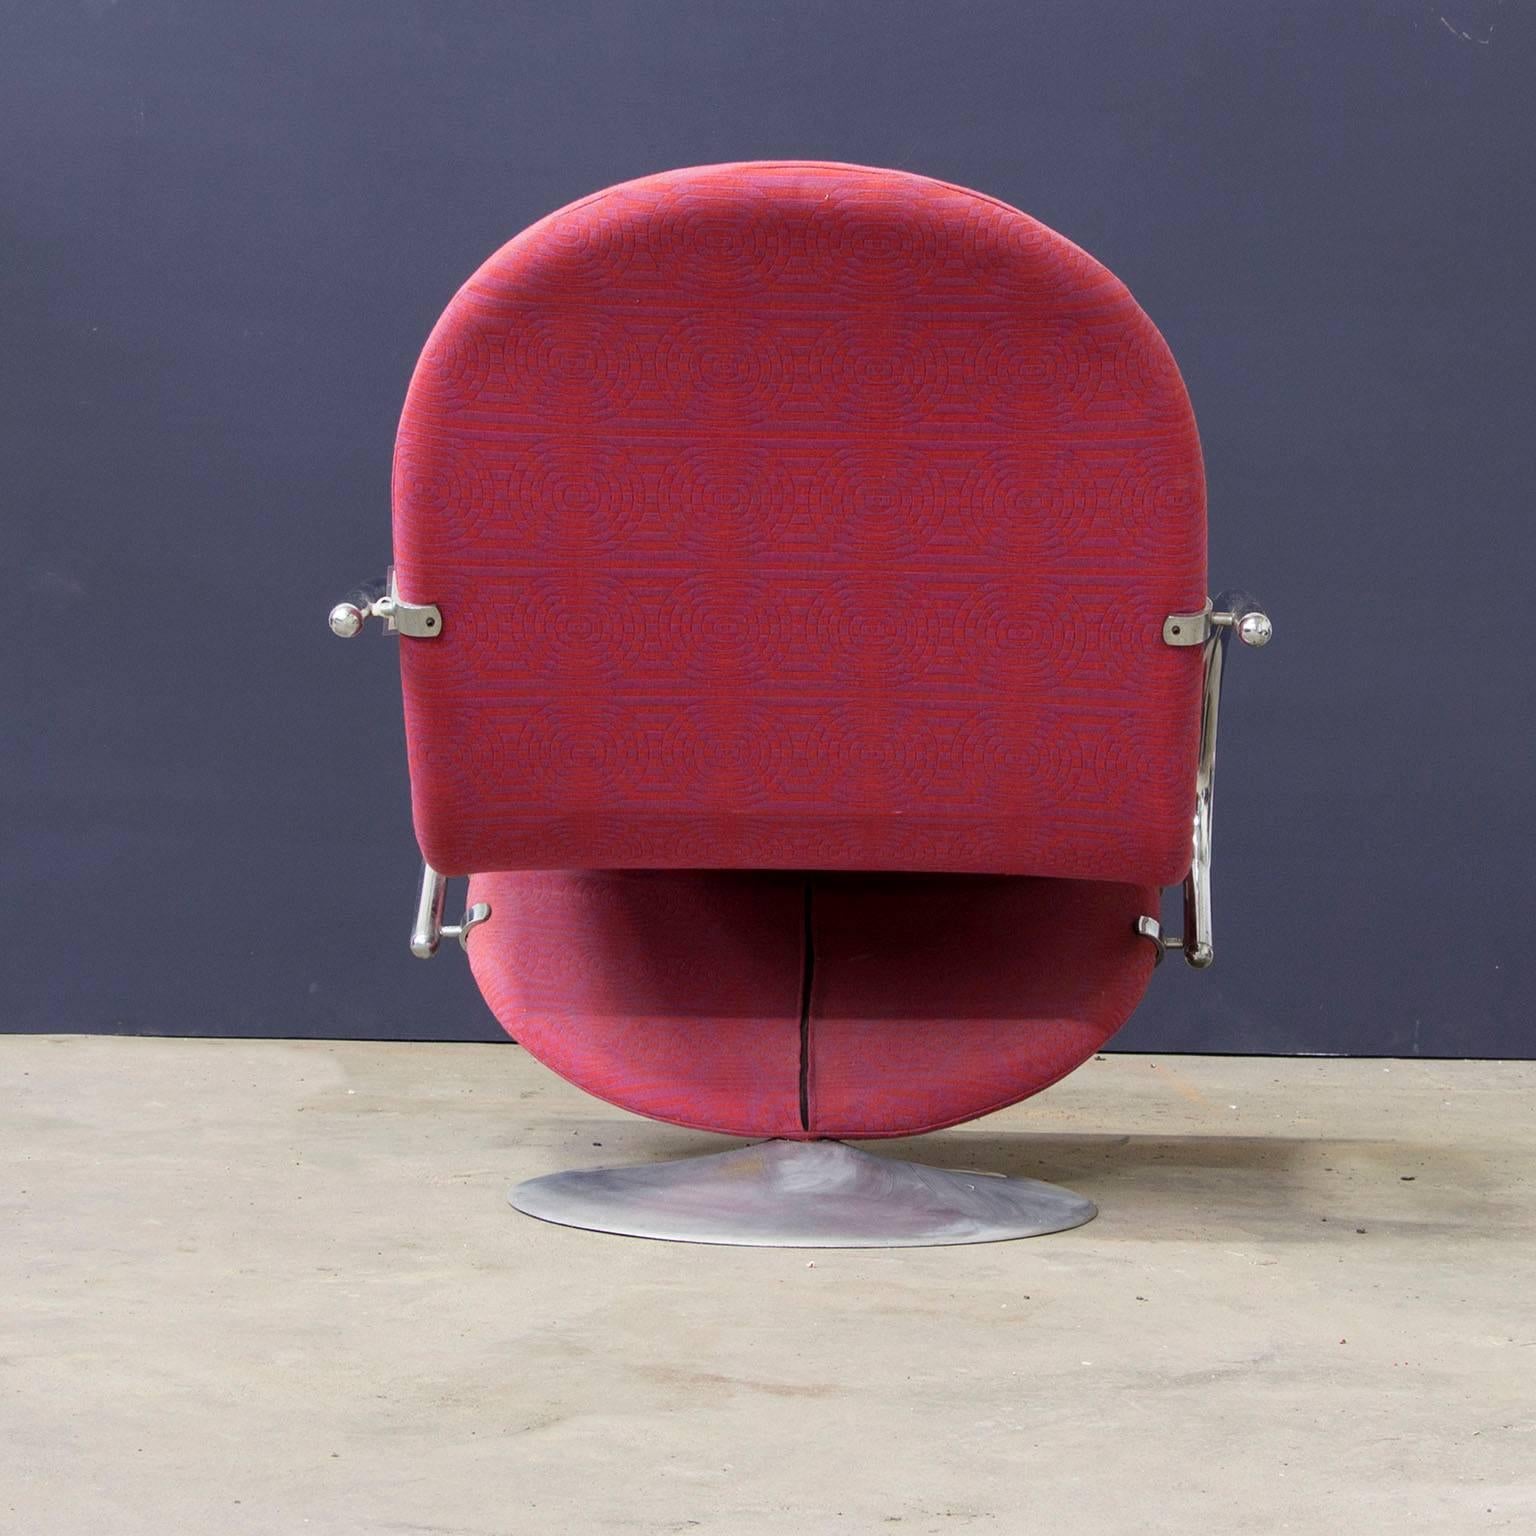 Danish 1973, Verner Panton, 1-2-3 Serie Easy Chair in Original Panton Fabric For Sale